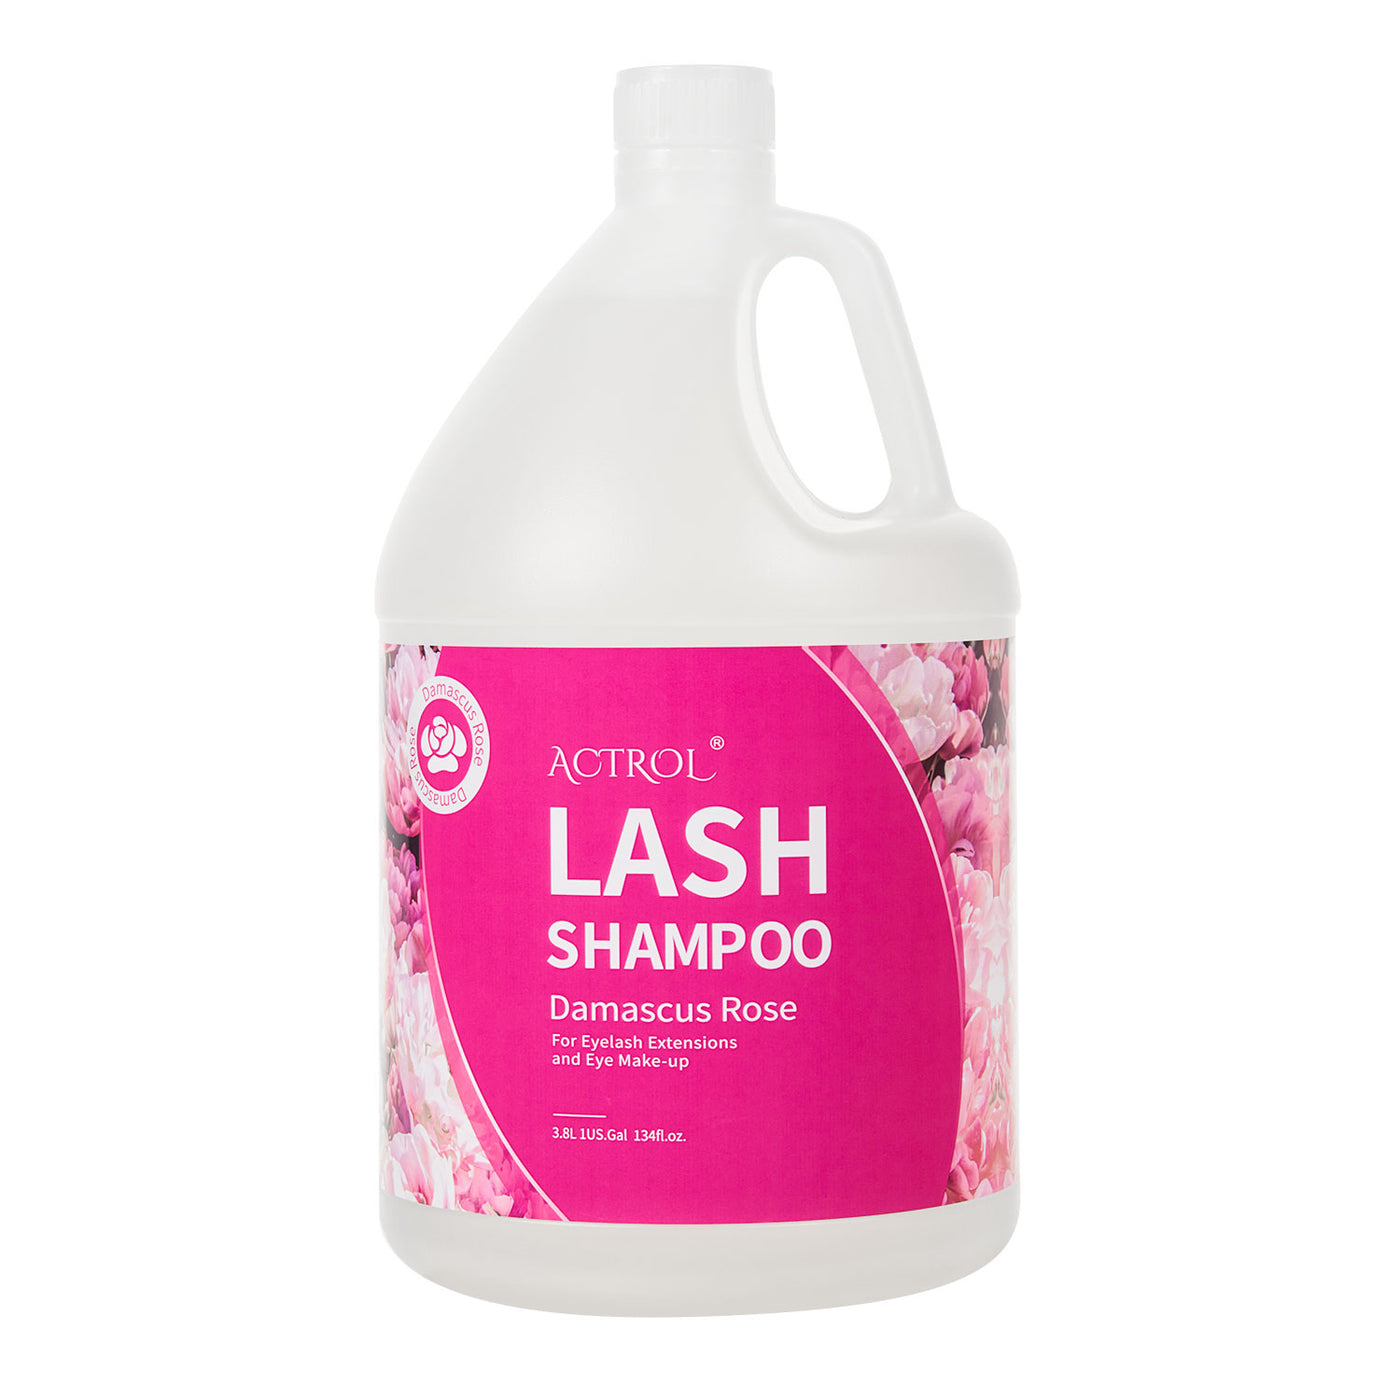 3.8L Lash Shampoo for Eyelash Extensions